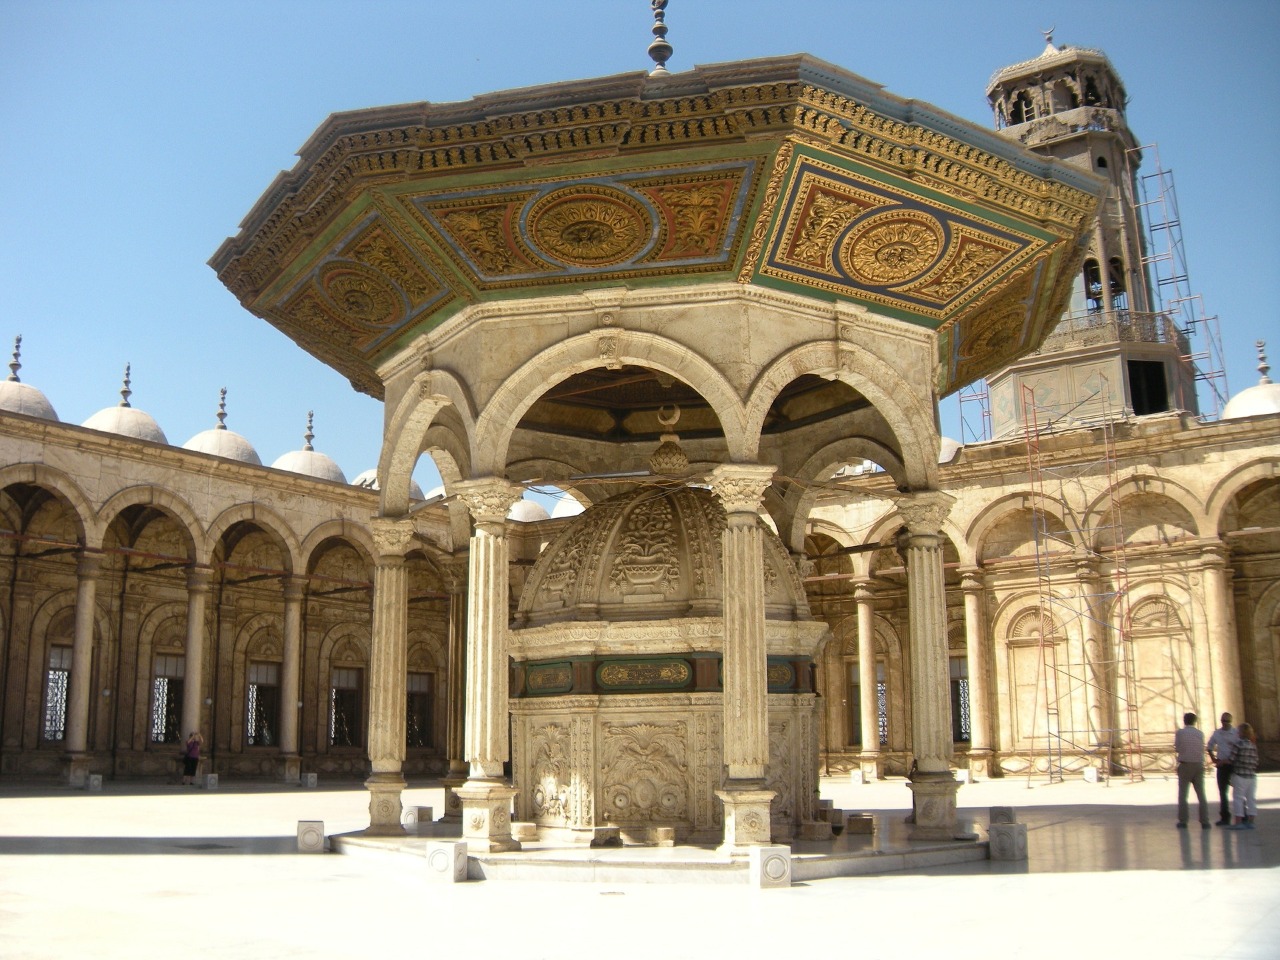 5-дневный исламский тур по Каиру | Цена 885€, отзывы, описание экскурсии